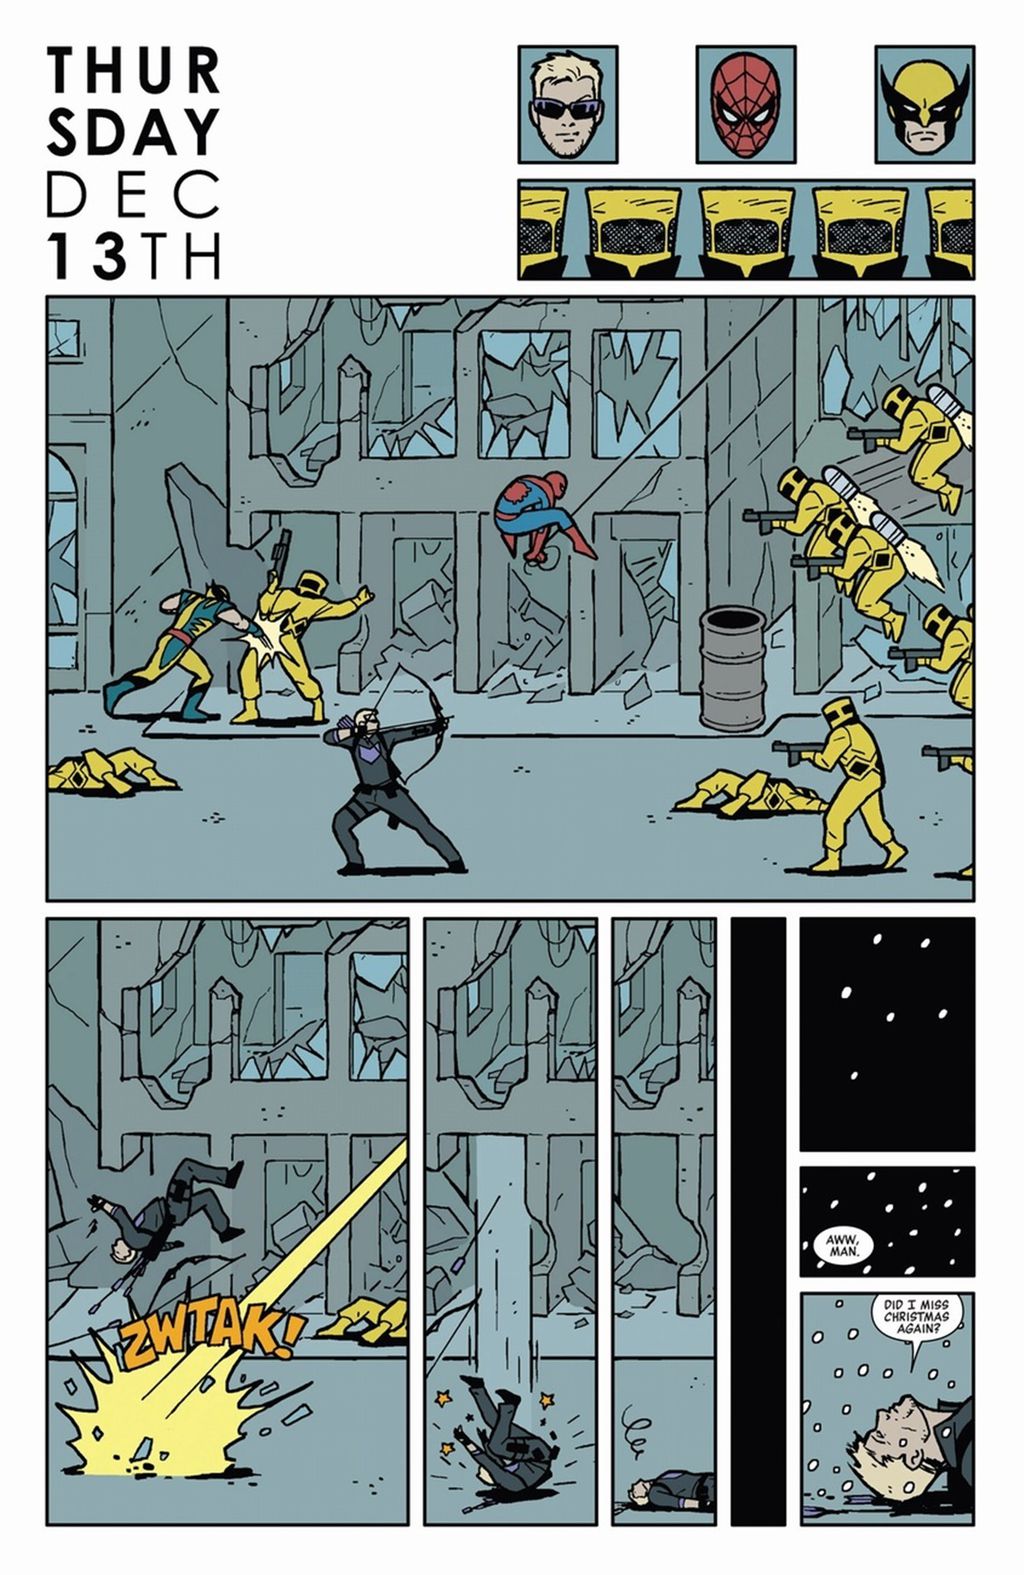 Quadrinhos do Gavião Arqueiro fazem uma homenagem aos games (Imagem: Reprodução/Marvel Comics)